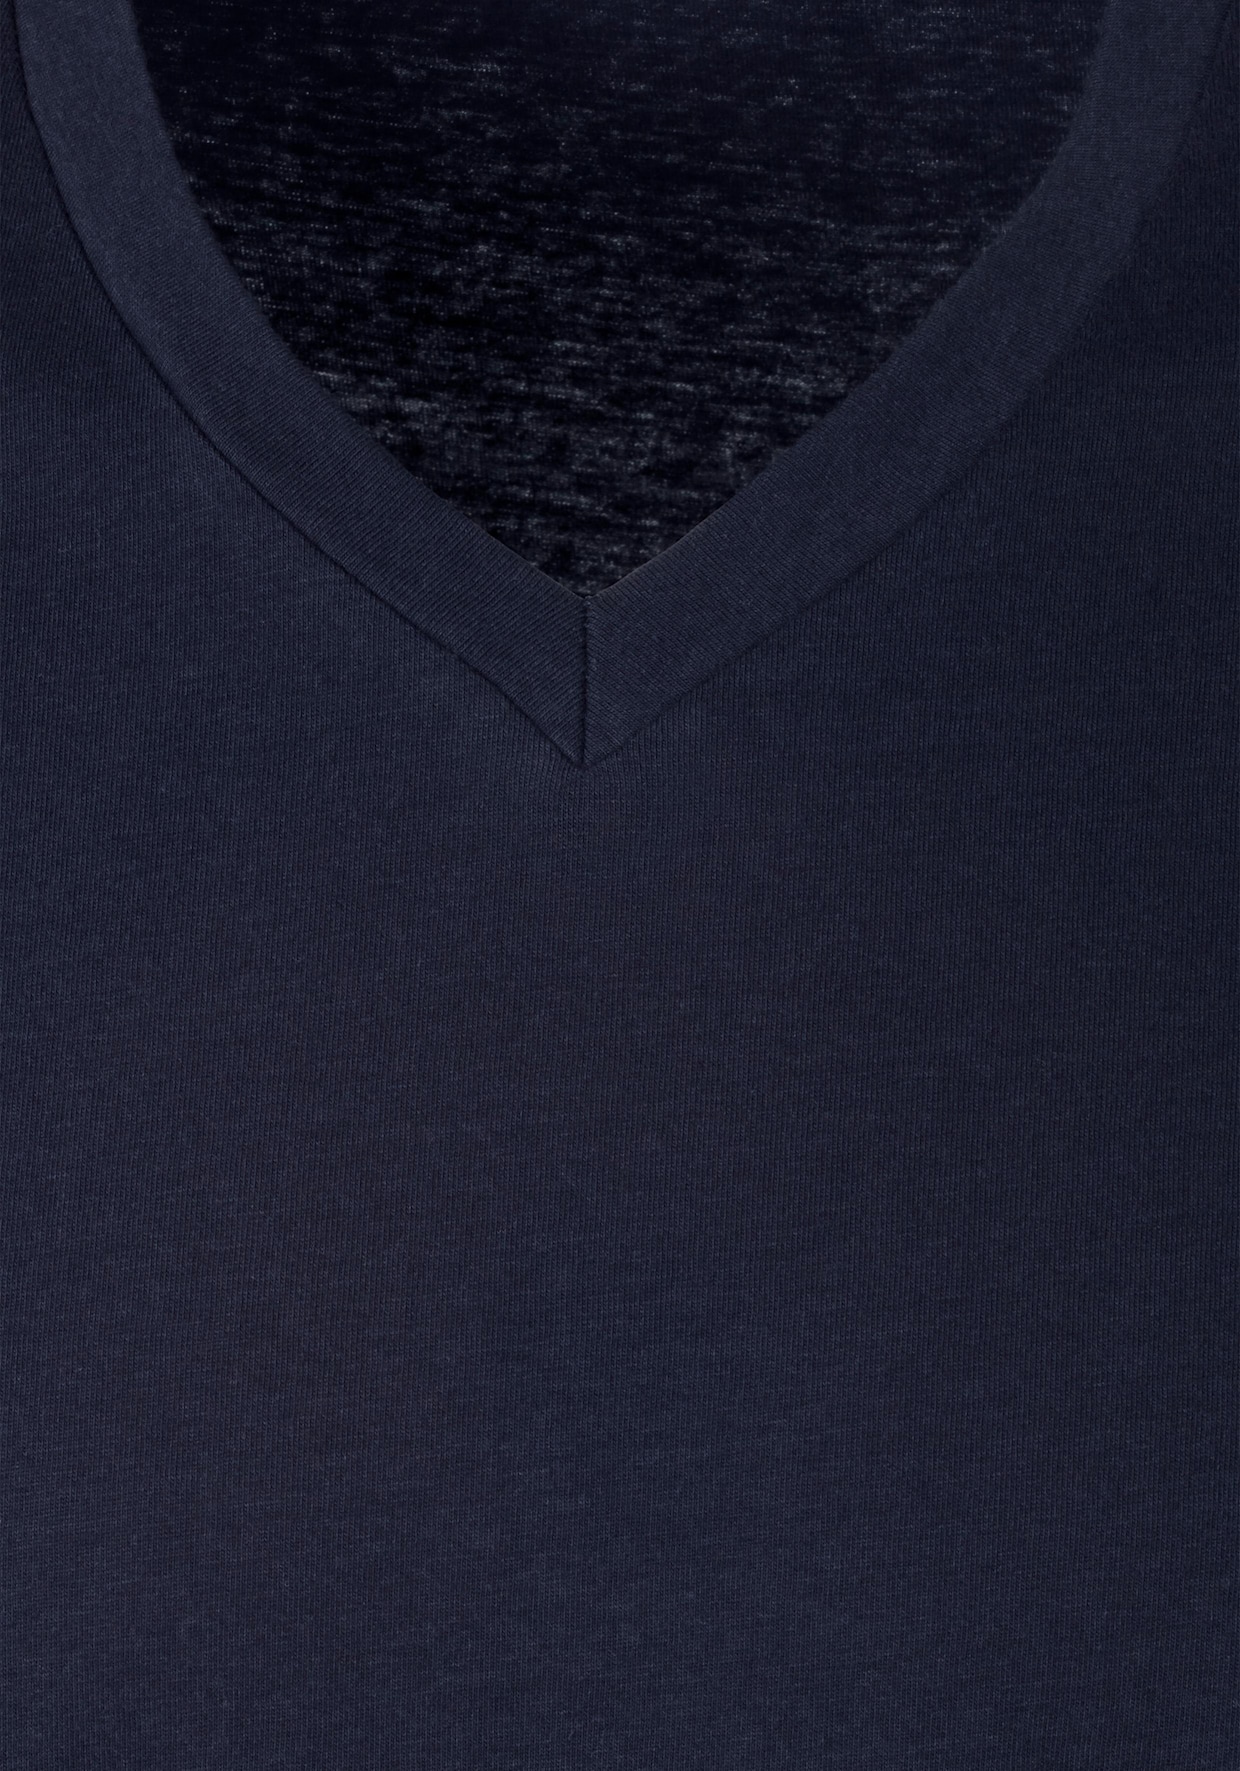 s.Oliver V-Shirt - grau-meliert, navy, schwarz